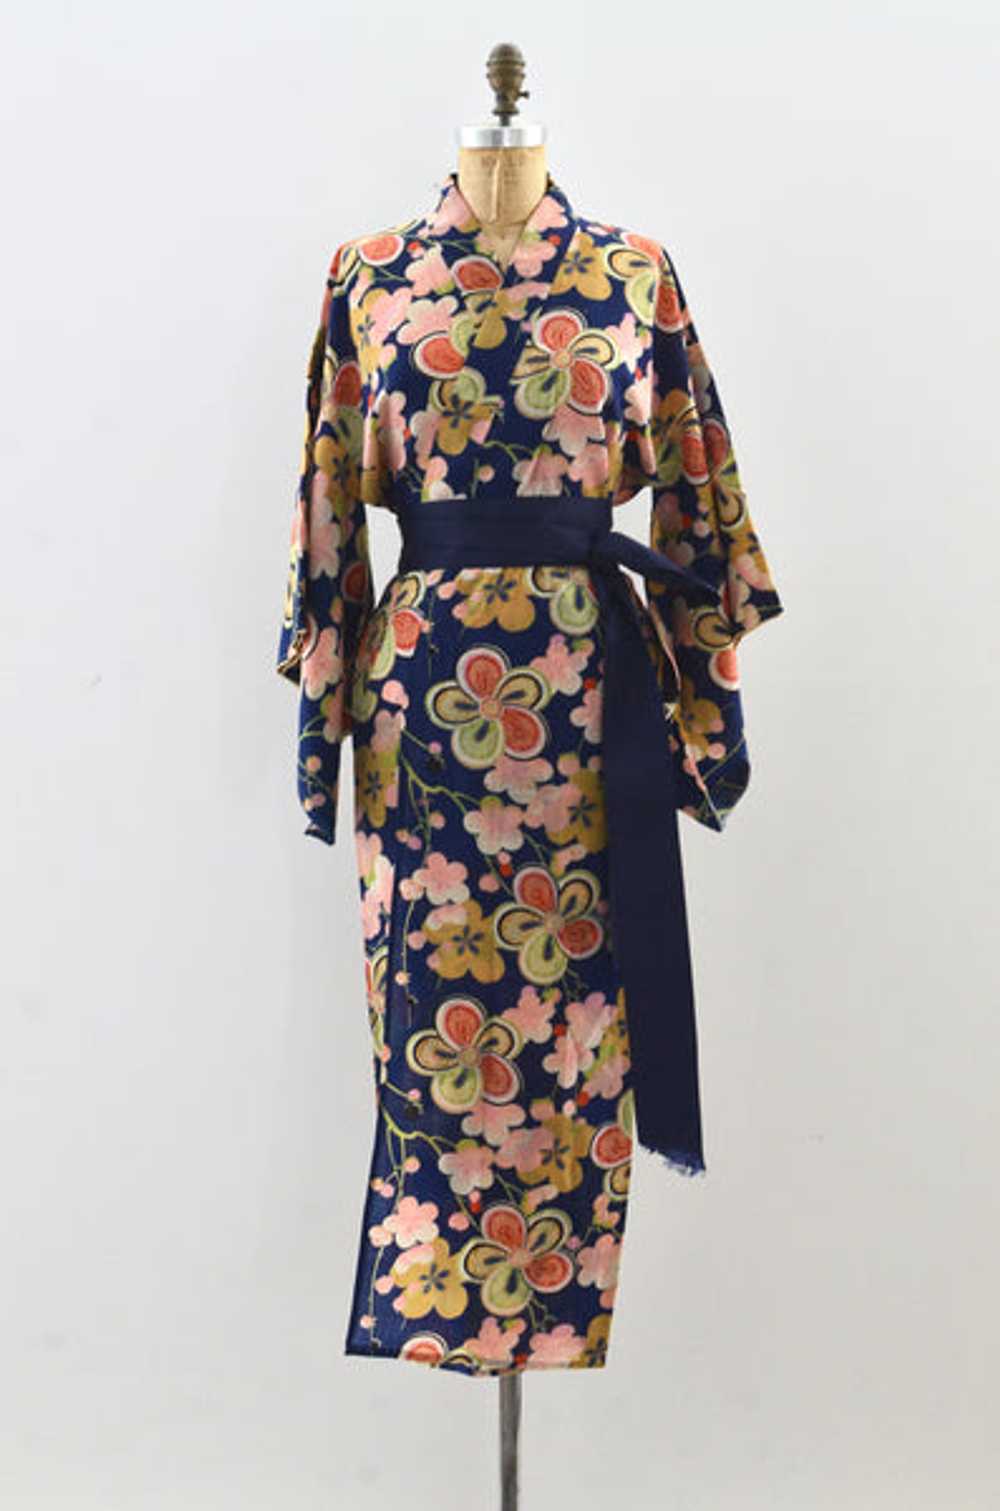 Old Floral Kimono - image 1